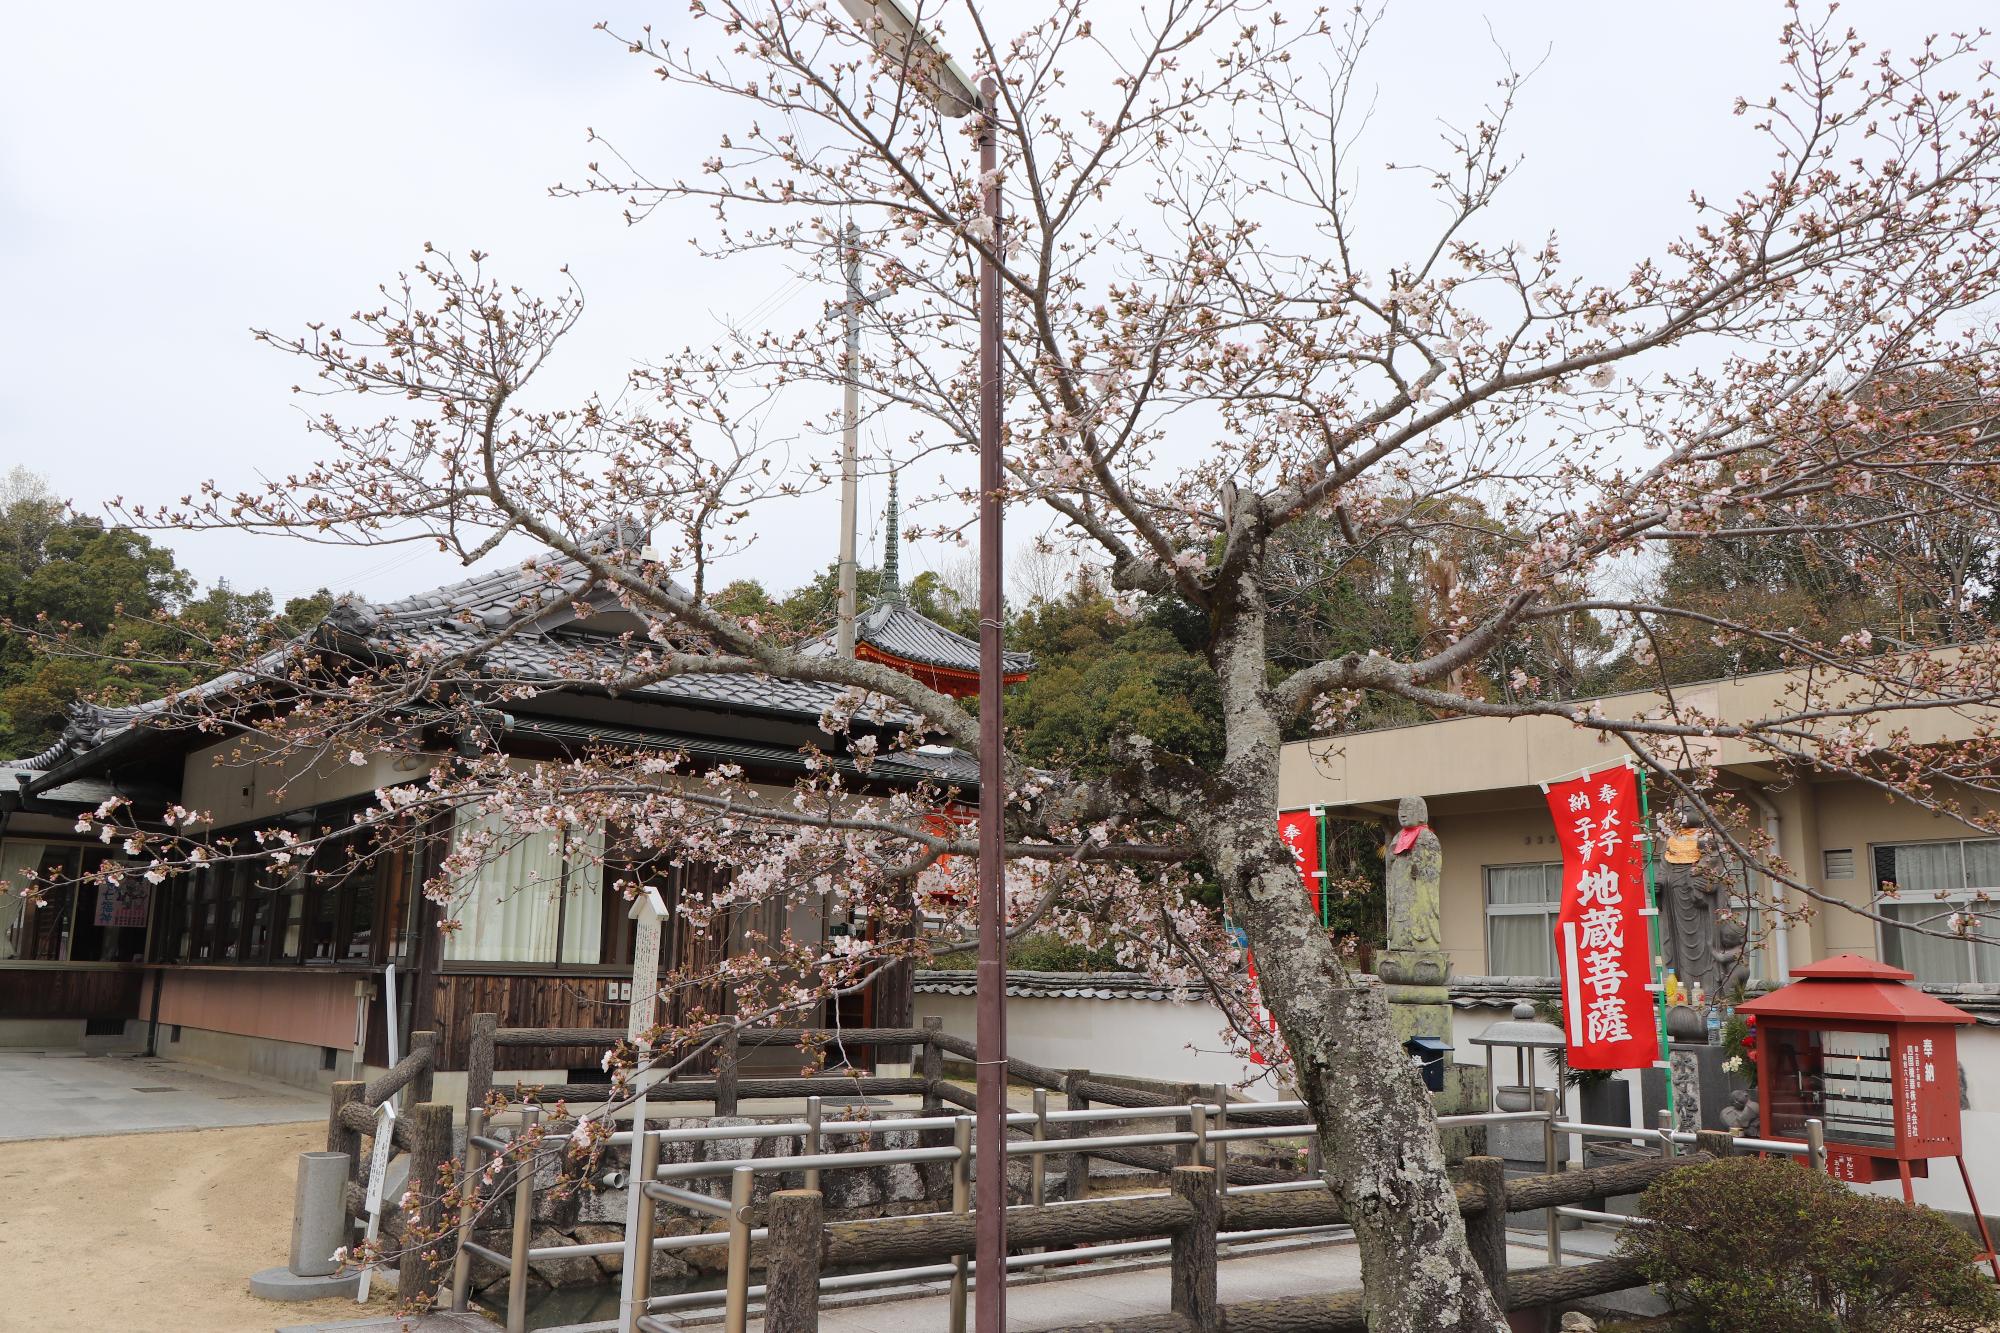 與田寺の境内に咲く、3分咲きの桜の写真